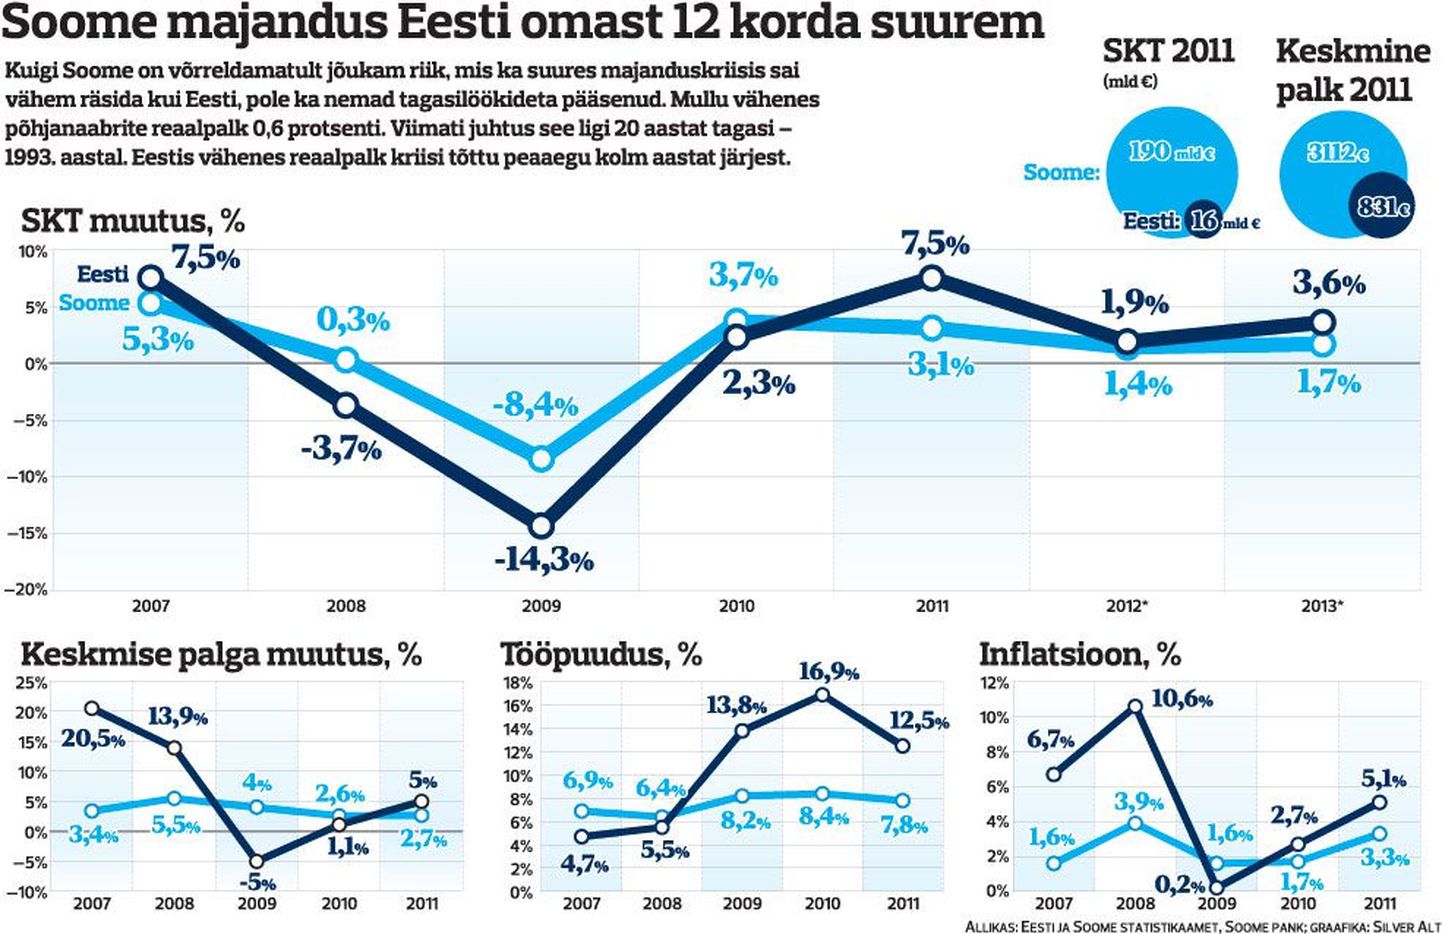 Soome majandus Eesti omast 12 korda suurem.